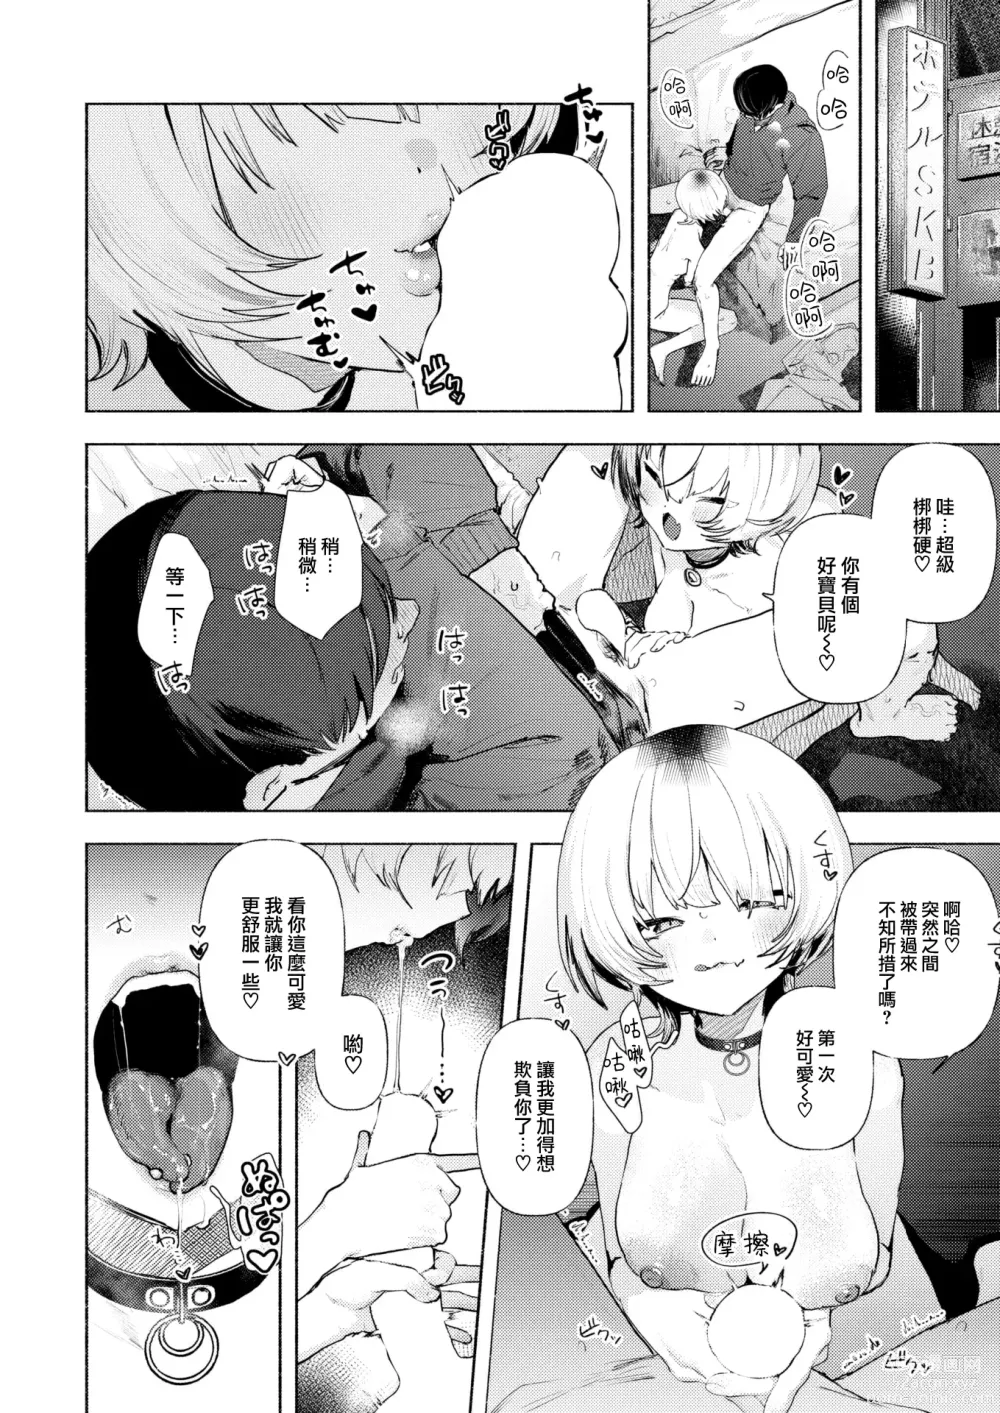 Page 10 of manga Noraneko